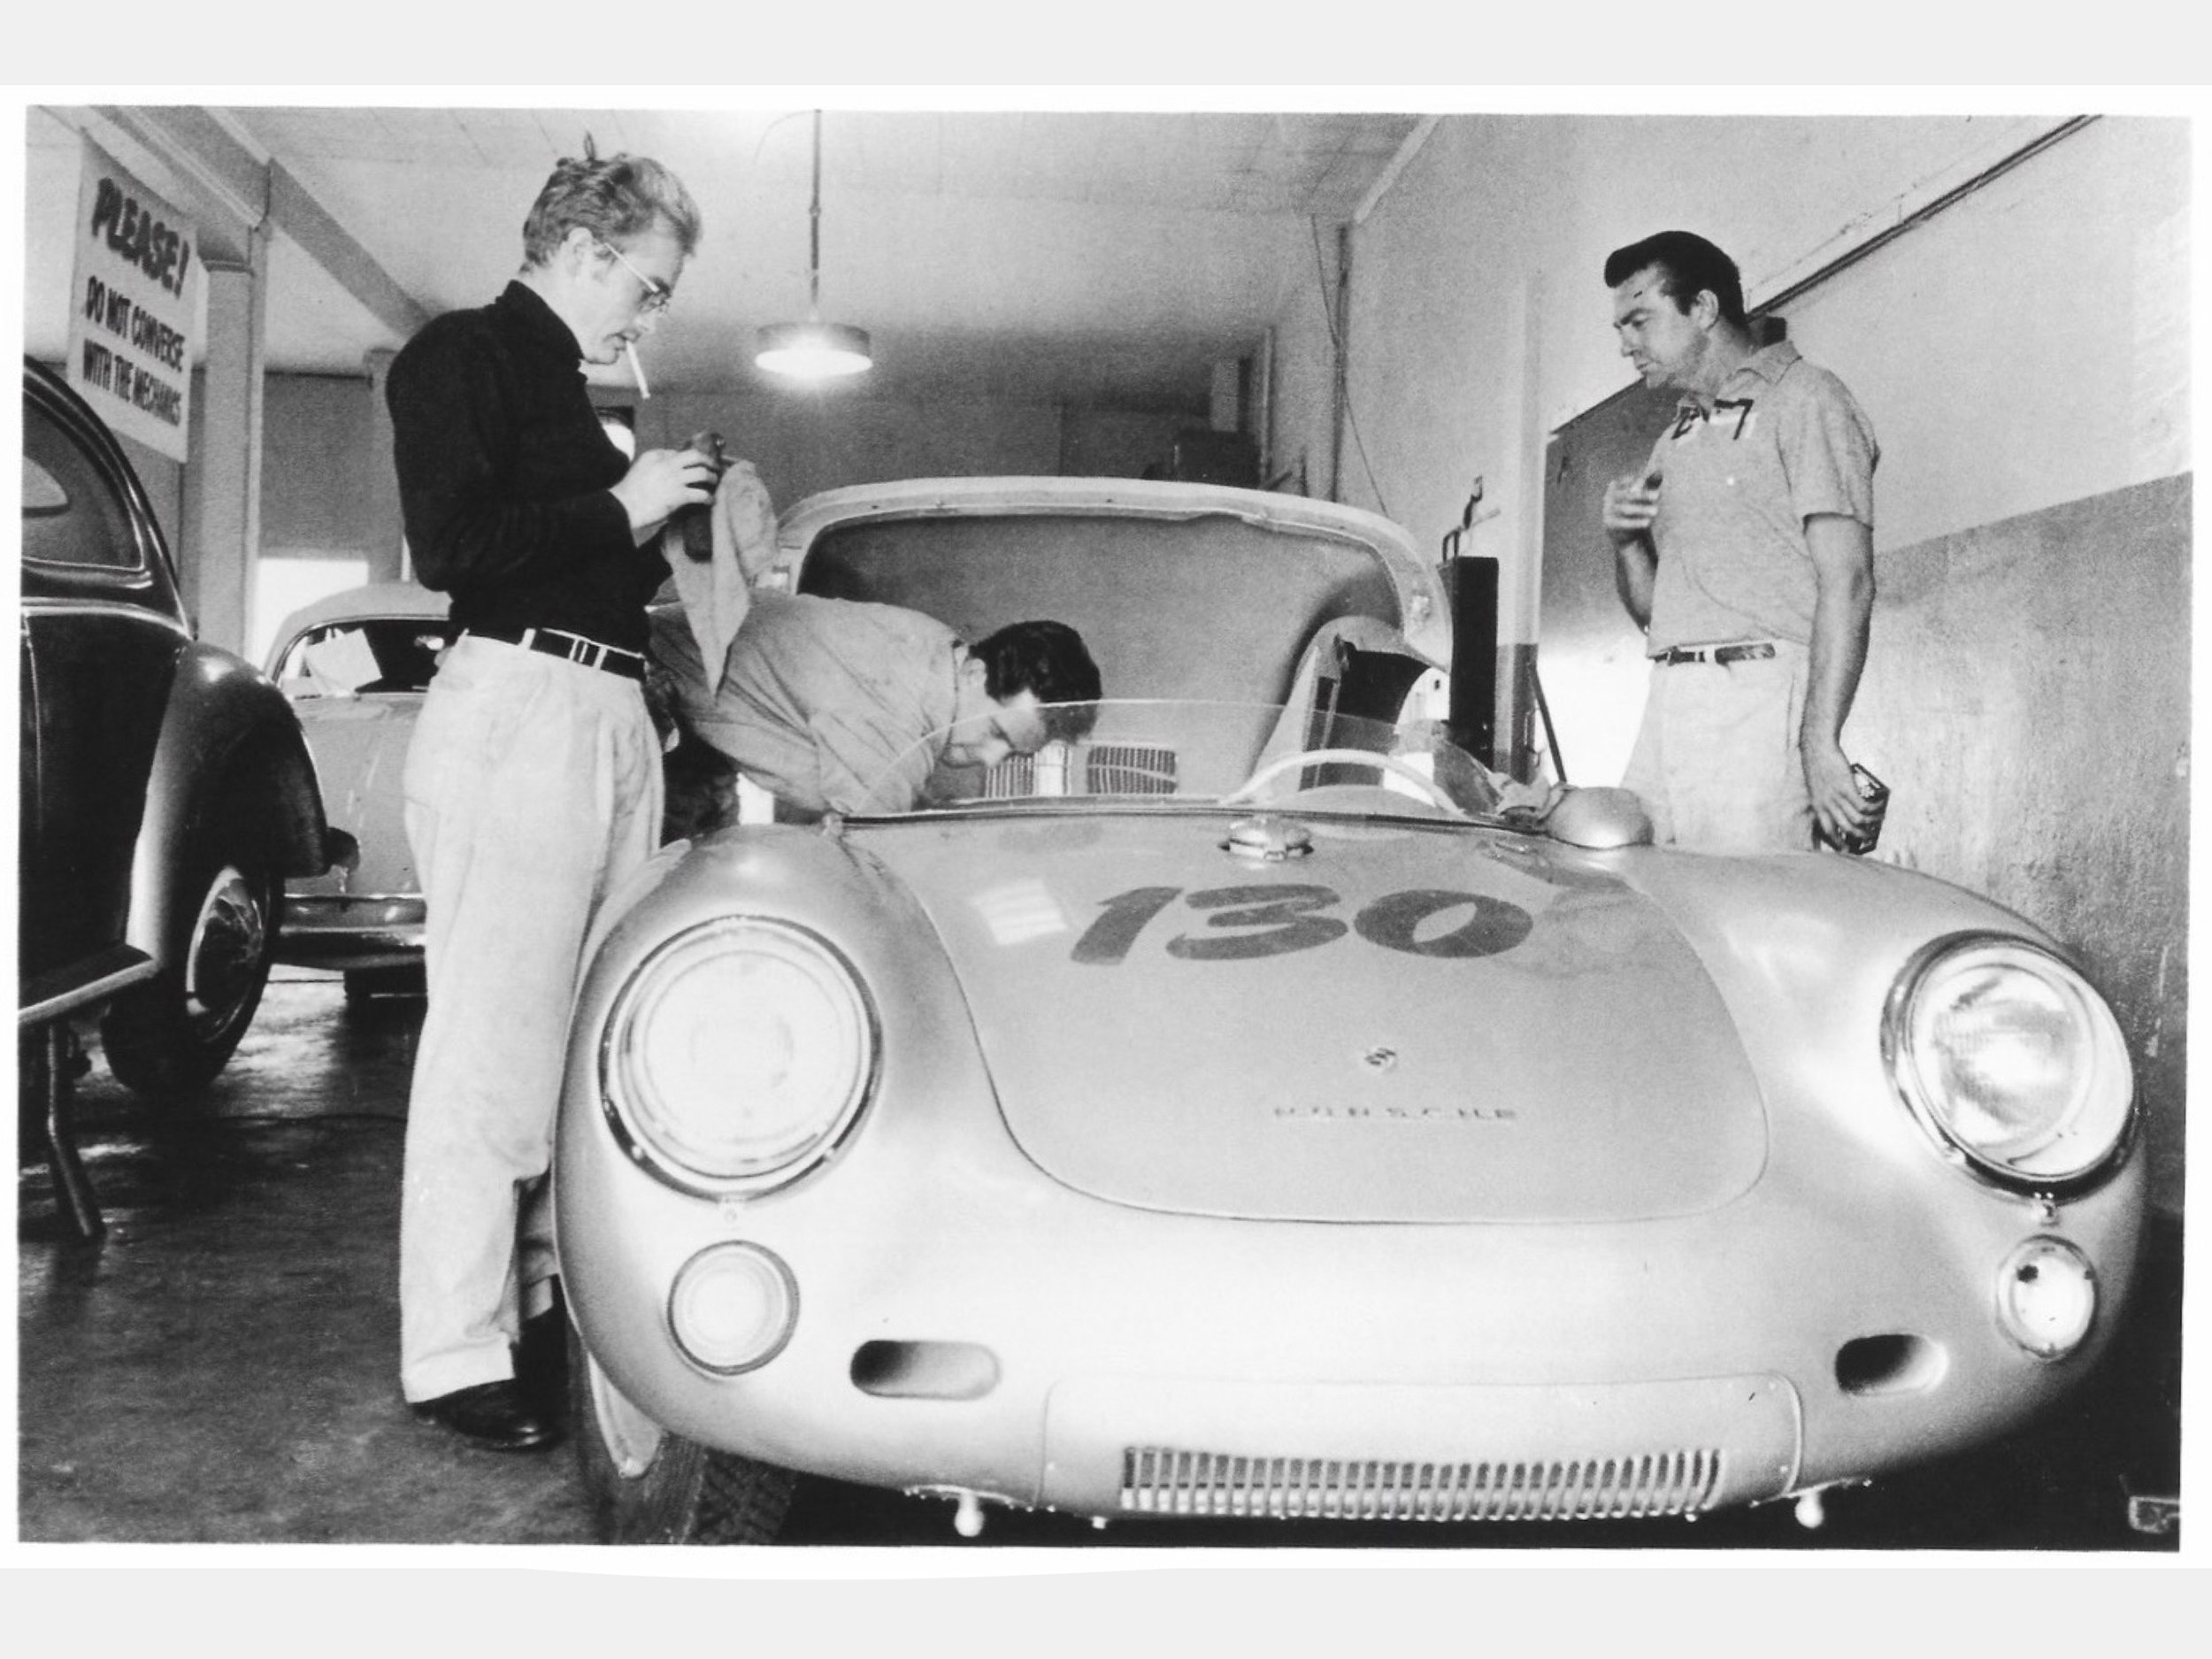 James Deal 1955 Porsche 550 Spyder 